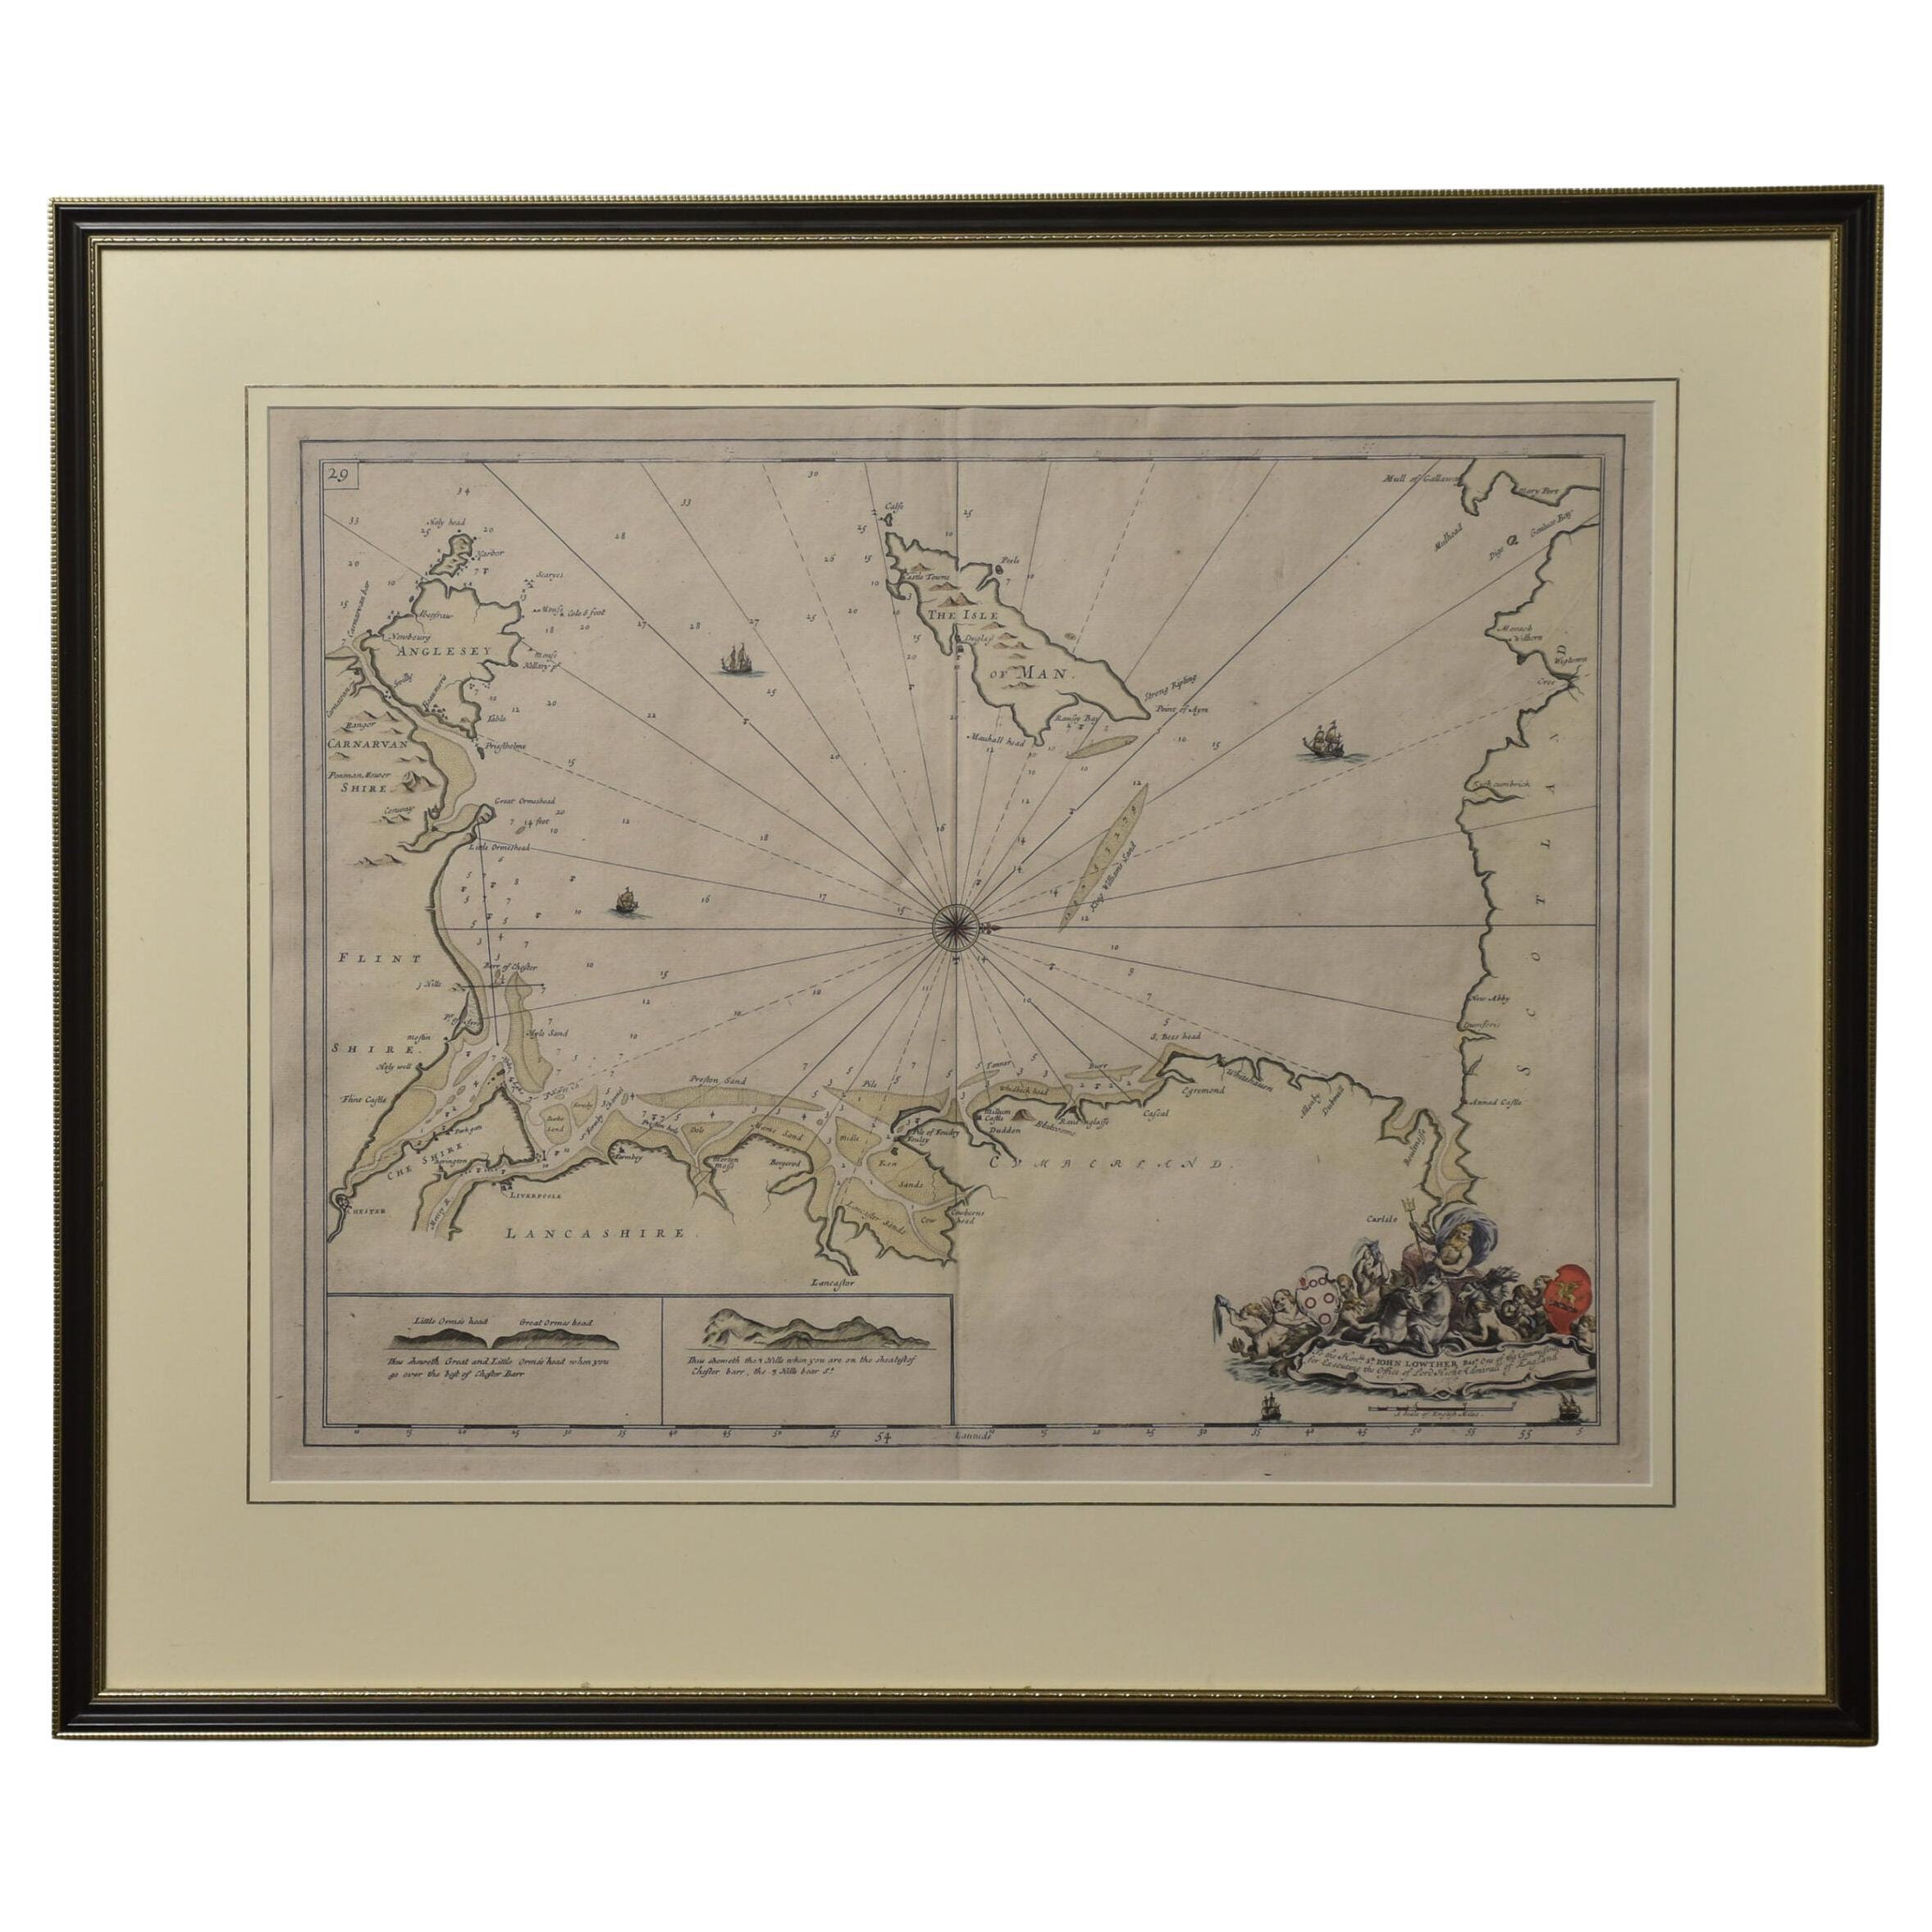 Northwest Coast and Isle of Man Map